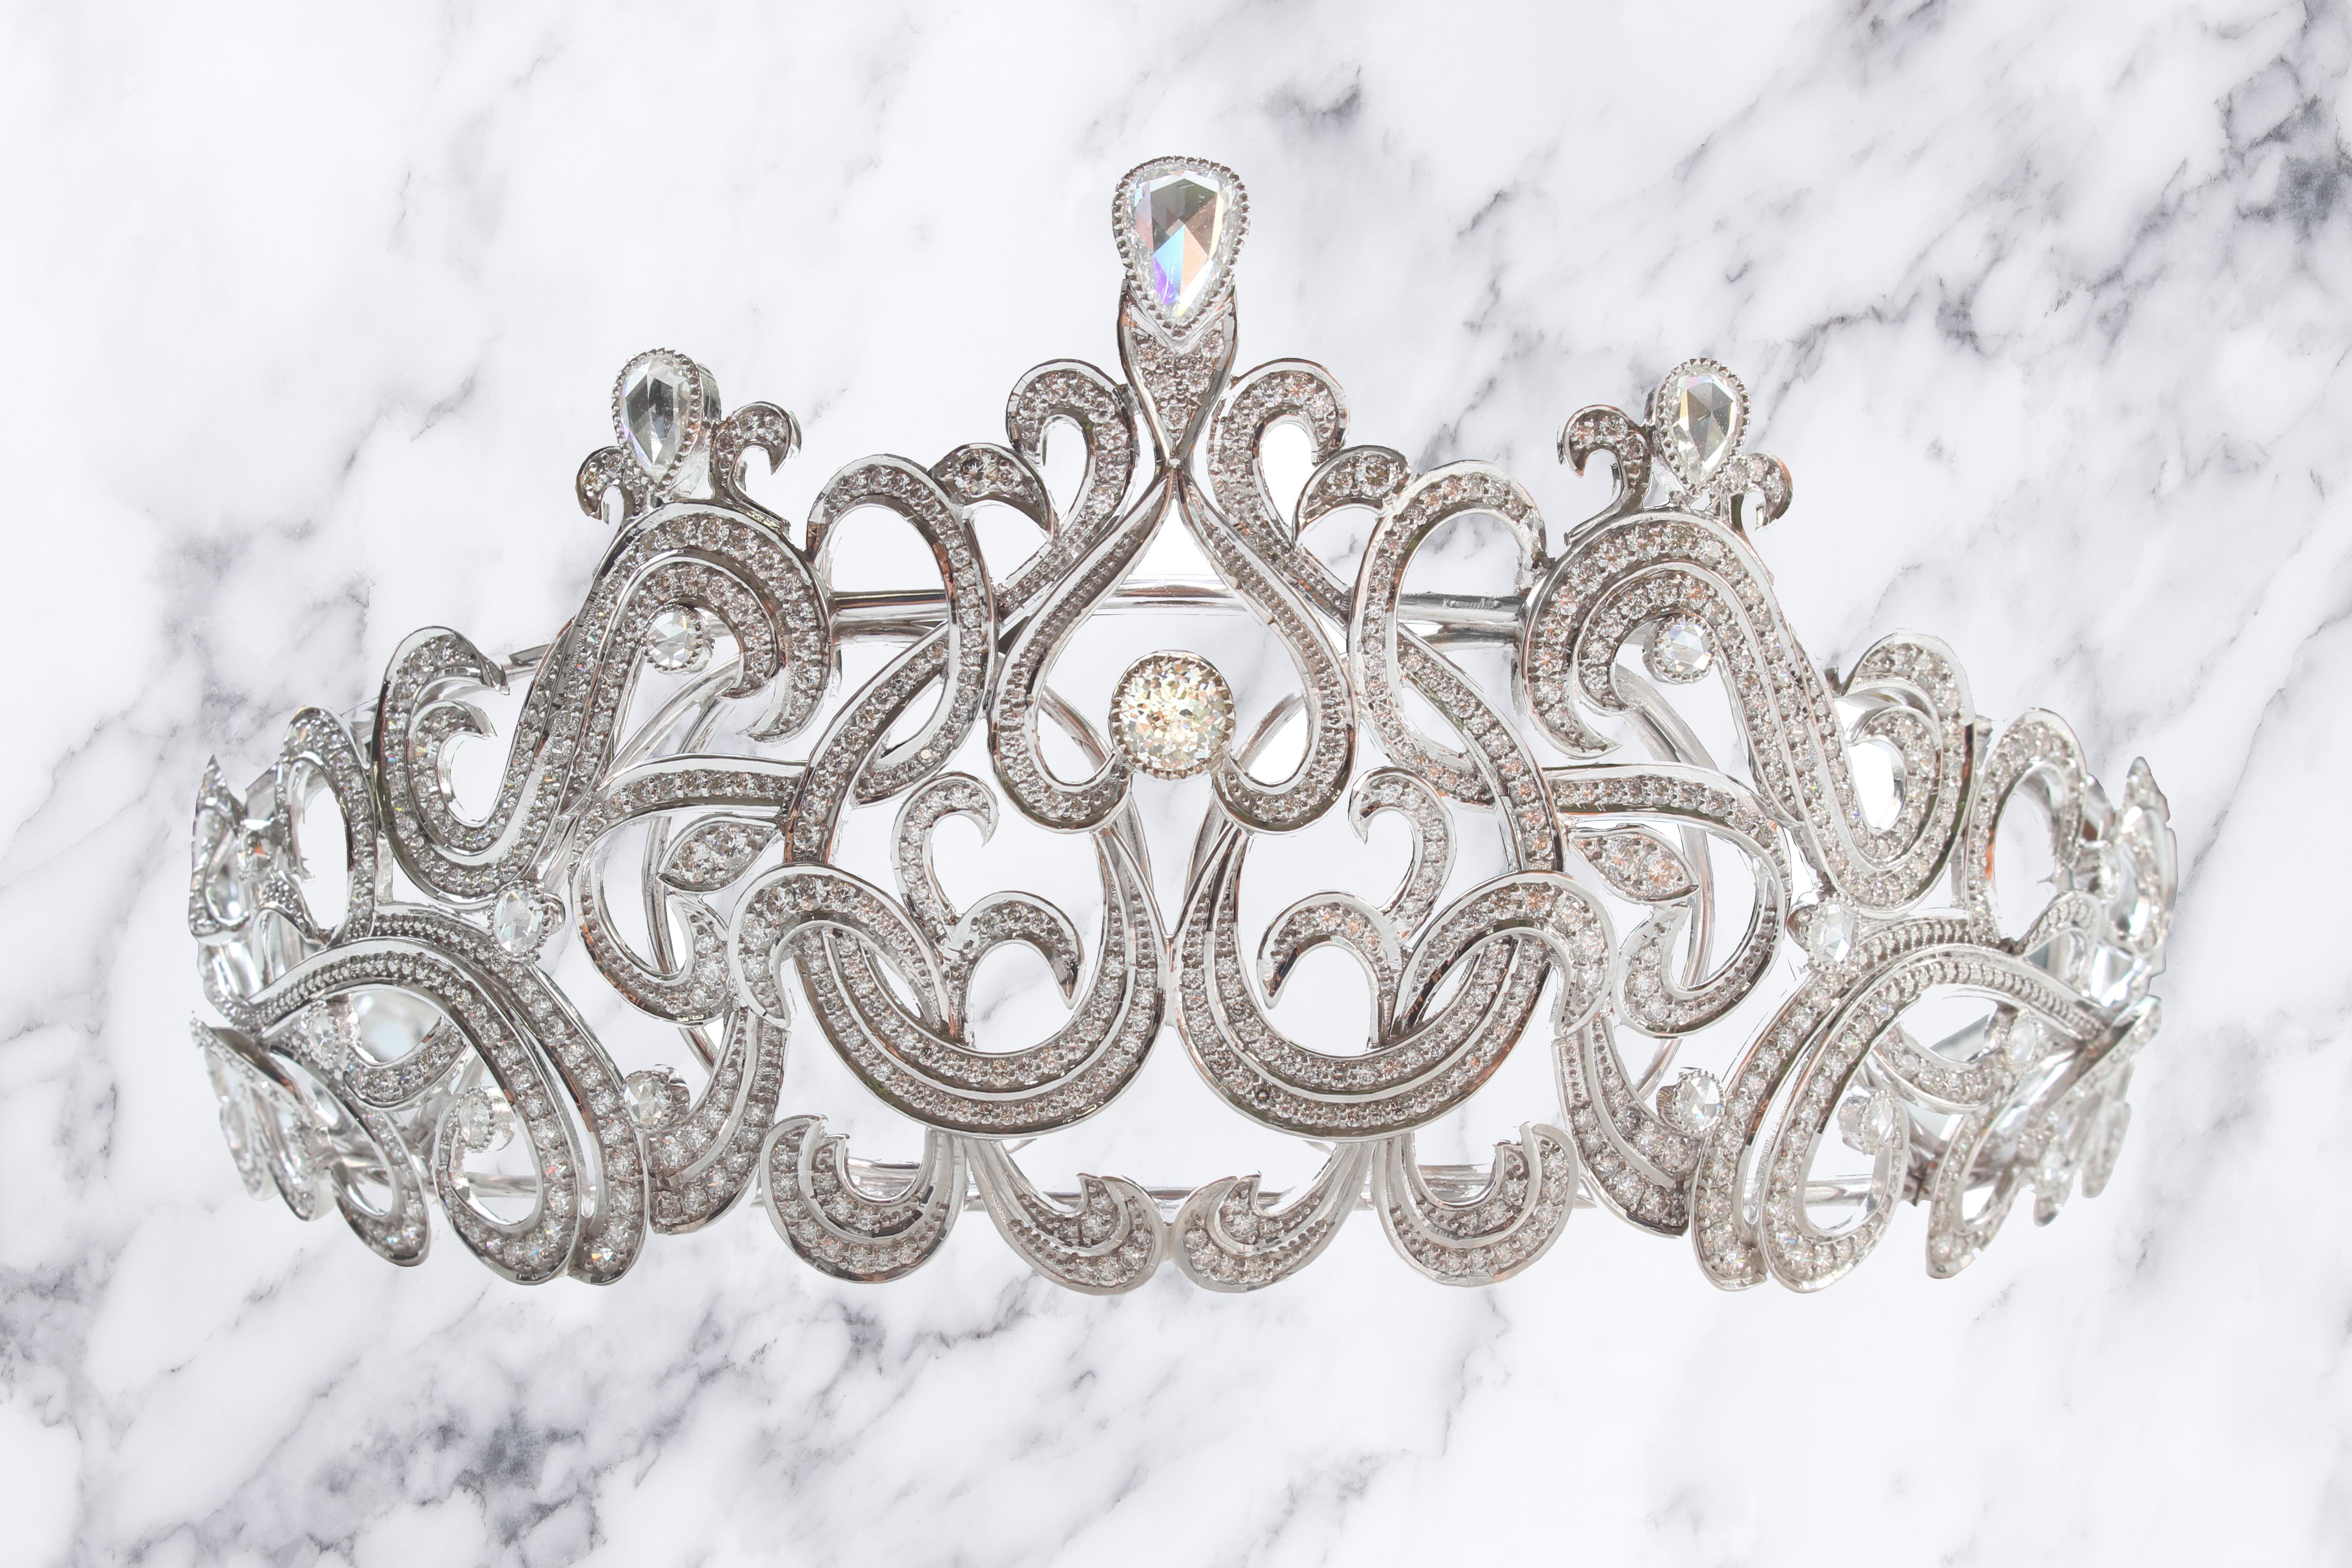 Crown Jubilee® Diamond hat diese mit Diamanten besetzte Tiara für die feine Gesellschaft und den Sammler entworfen. Das Gesamtgewicht der Diamanten in dieser Tiara beträgt 16,67ct. Der zentrale Diamant ist ein runder Crown Jubilee®-Diamant. Der